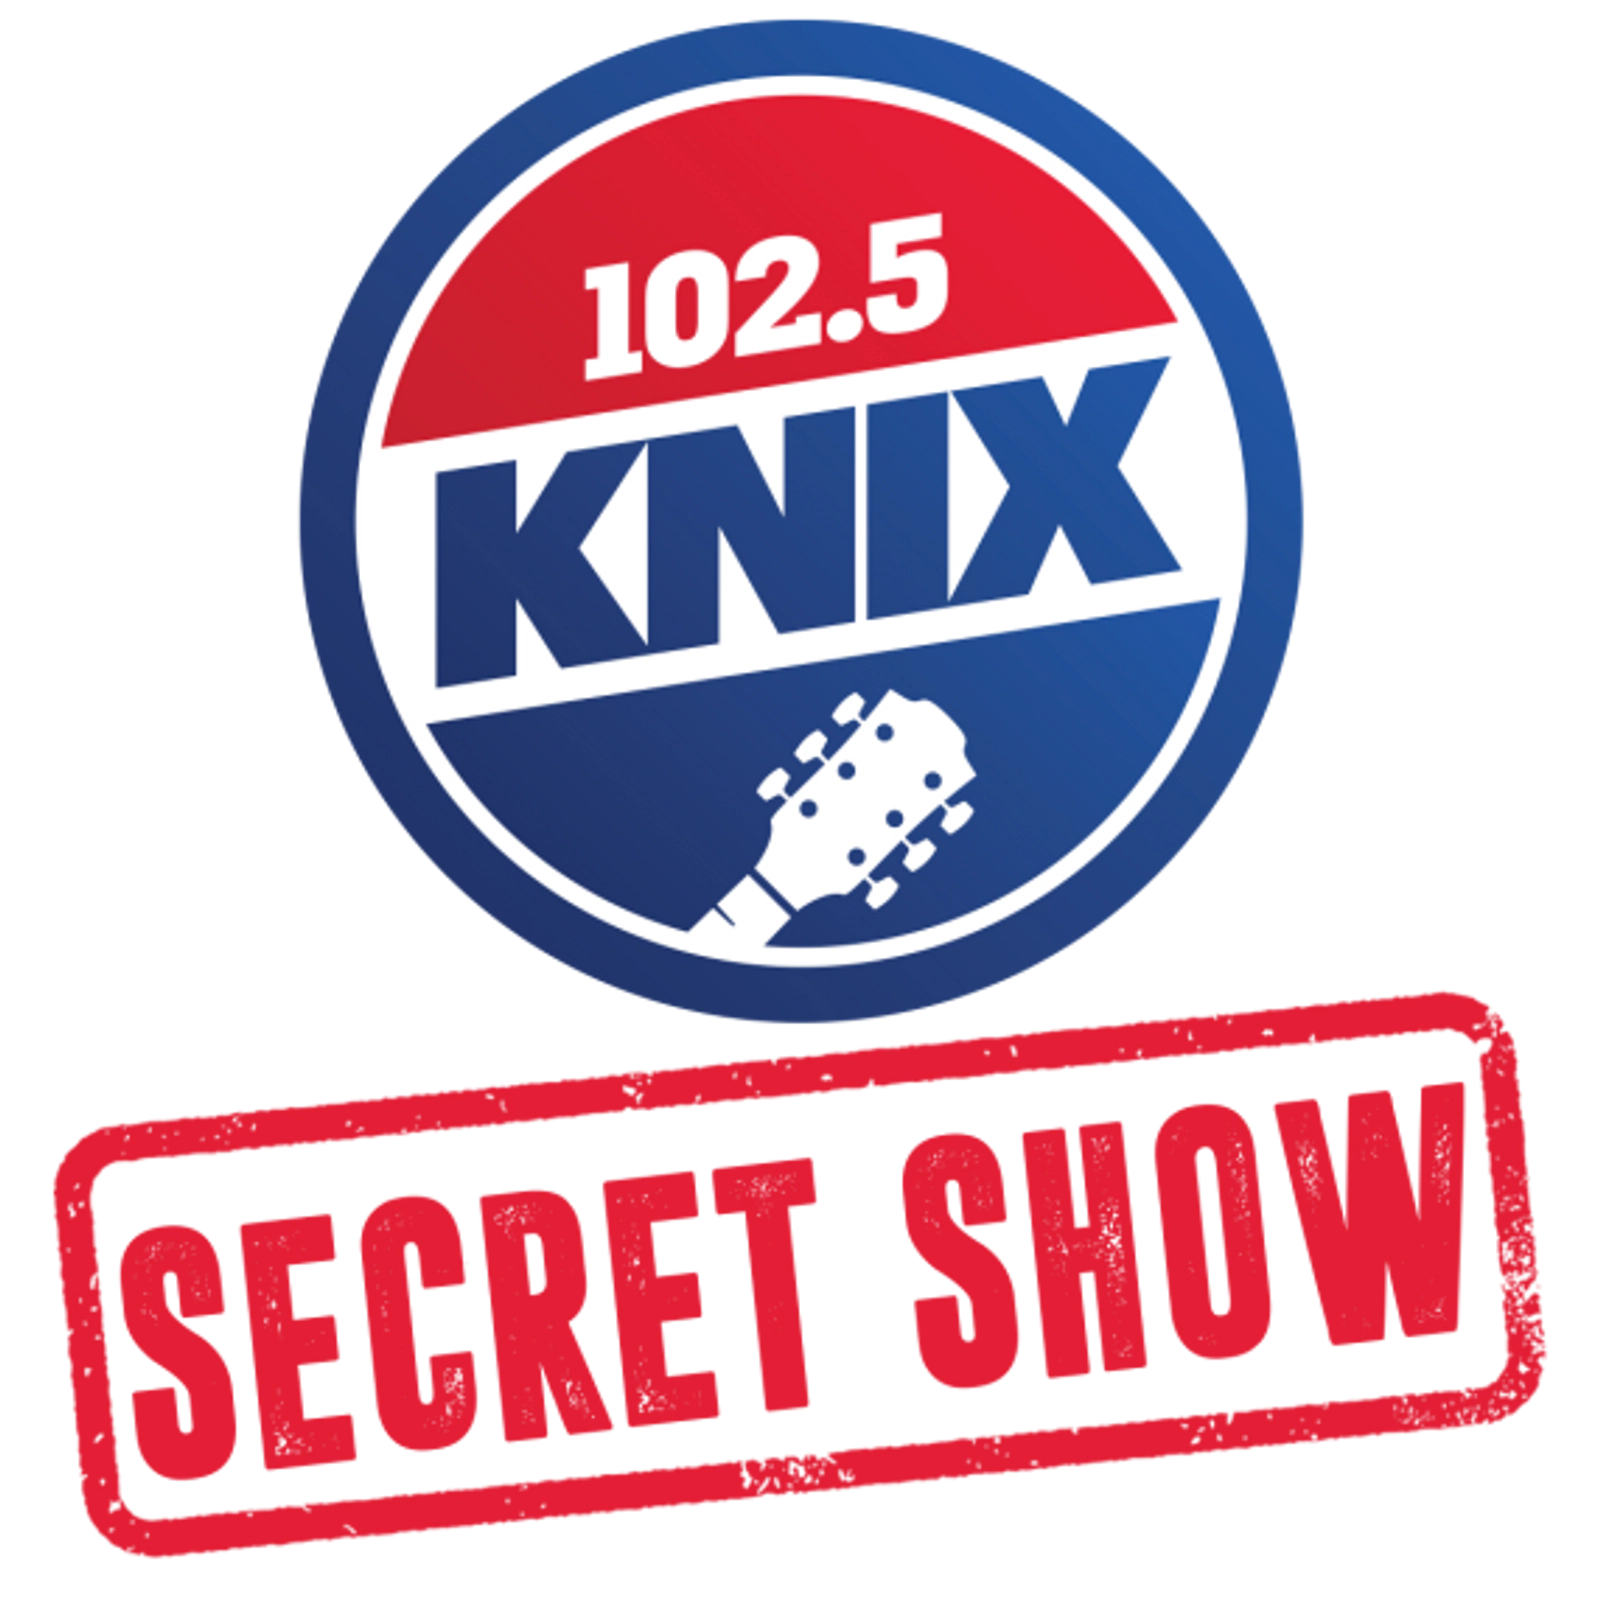 Win Ticket to KNIX Secret Show #15, 102.5 KNIX